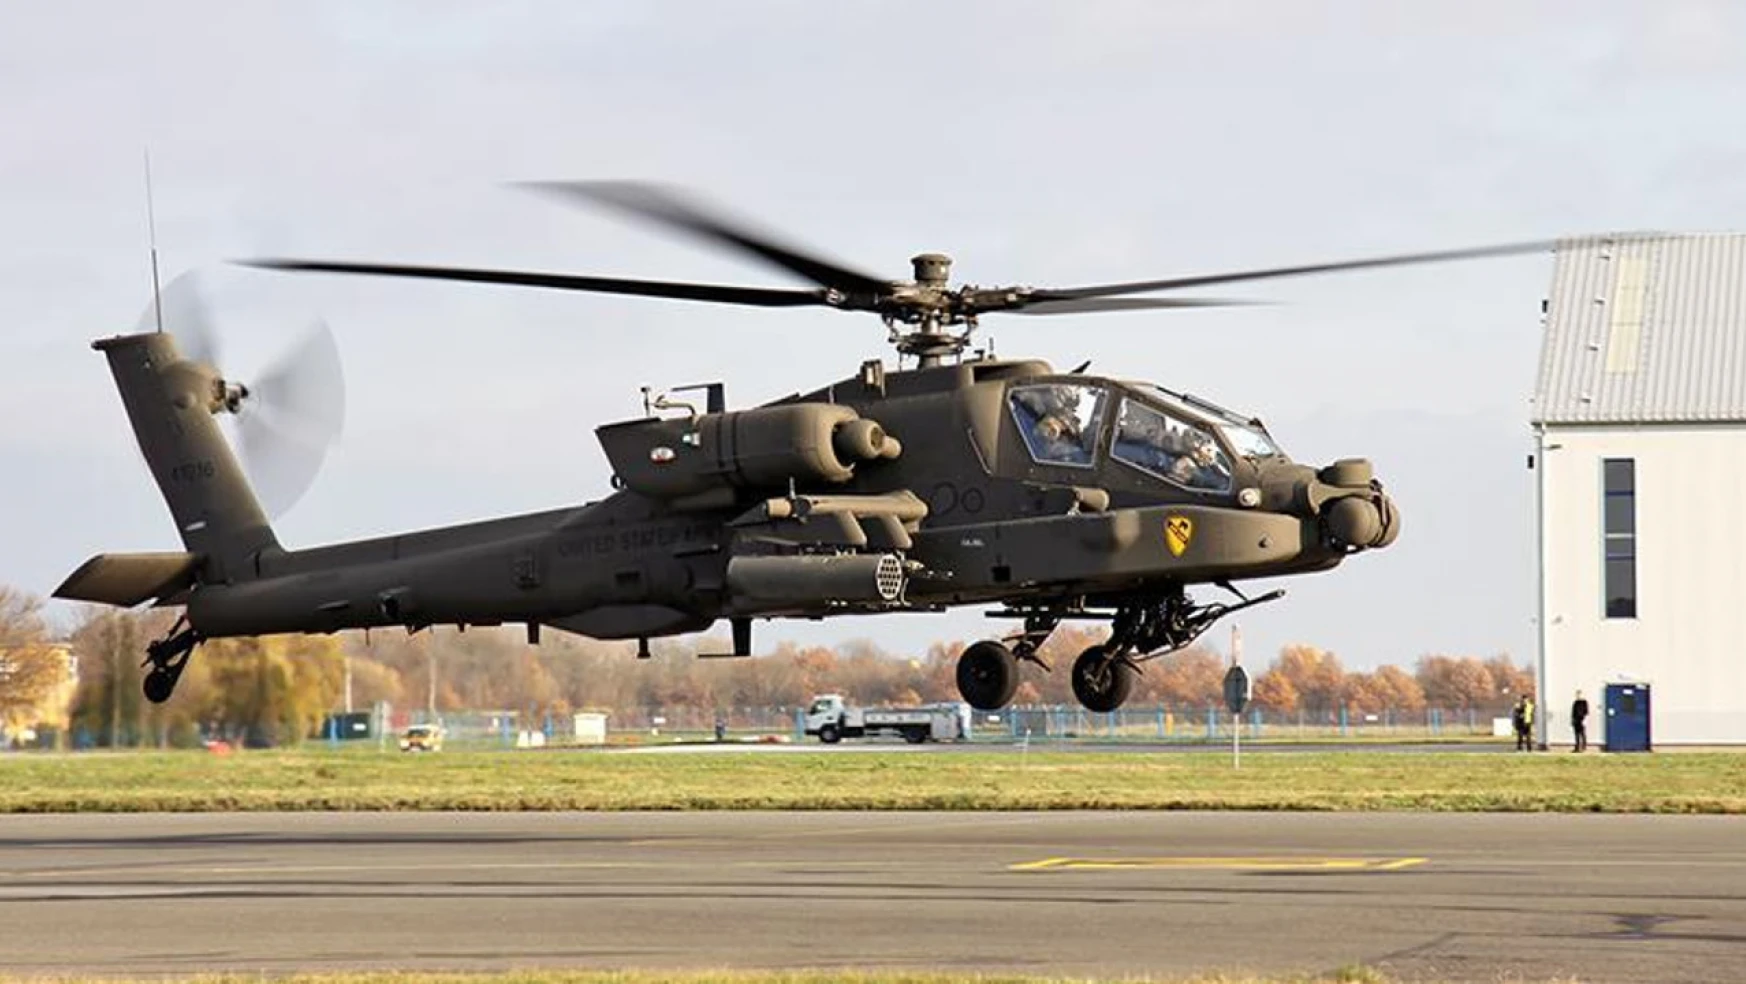 ABD'de askeri helikopter düştü: 2 ölü